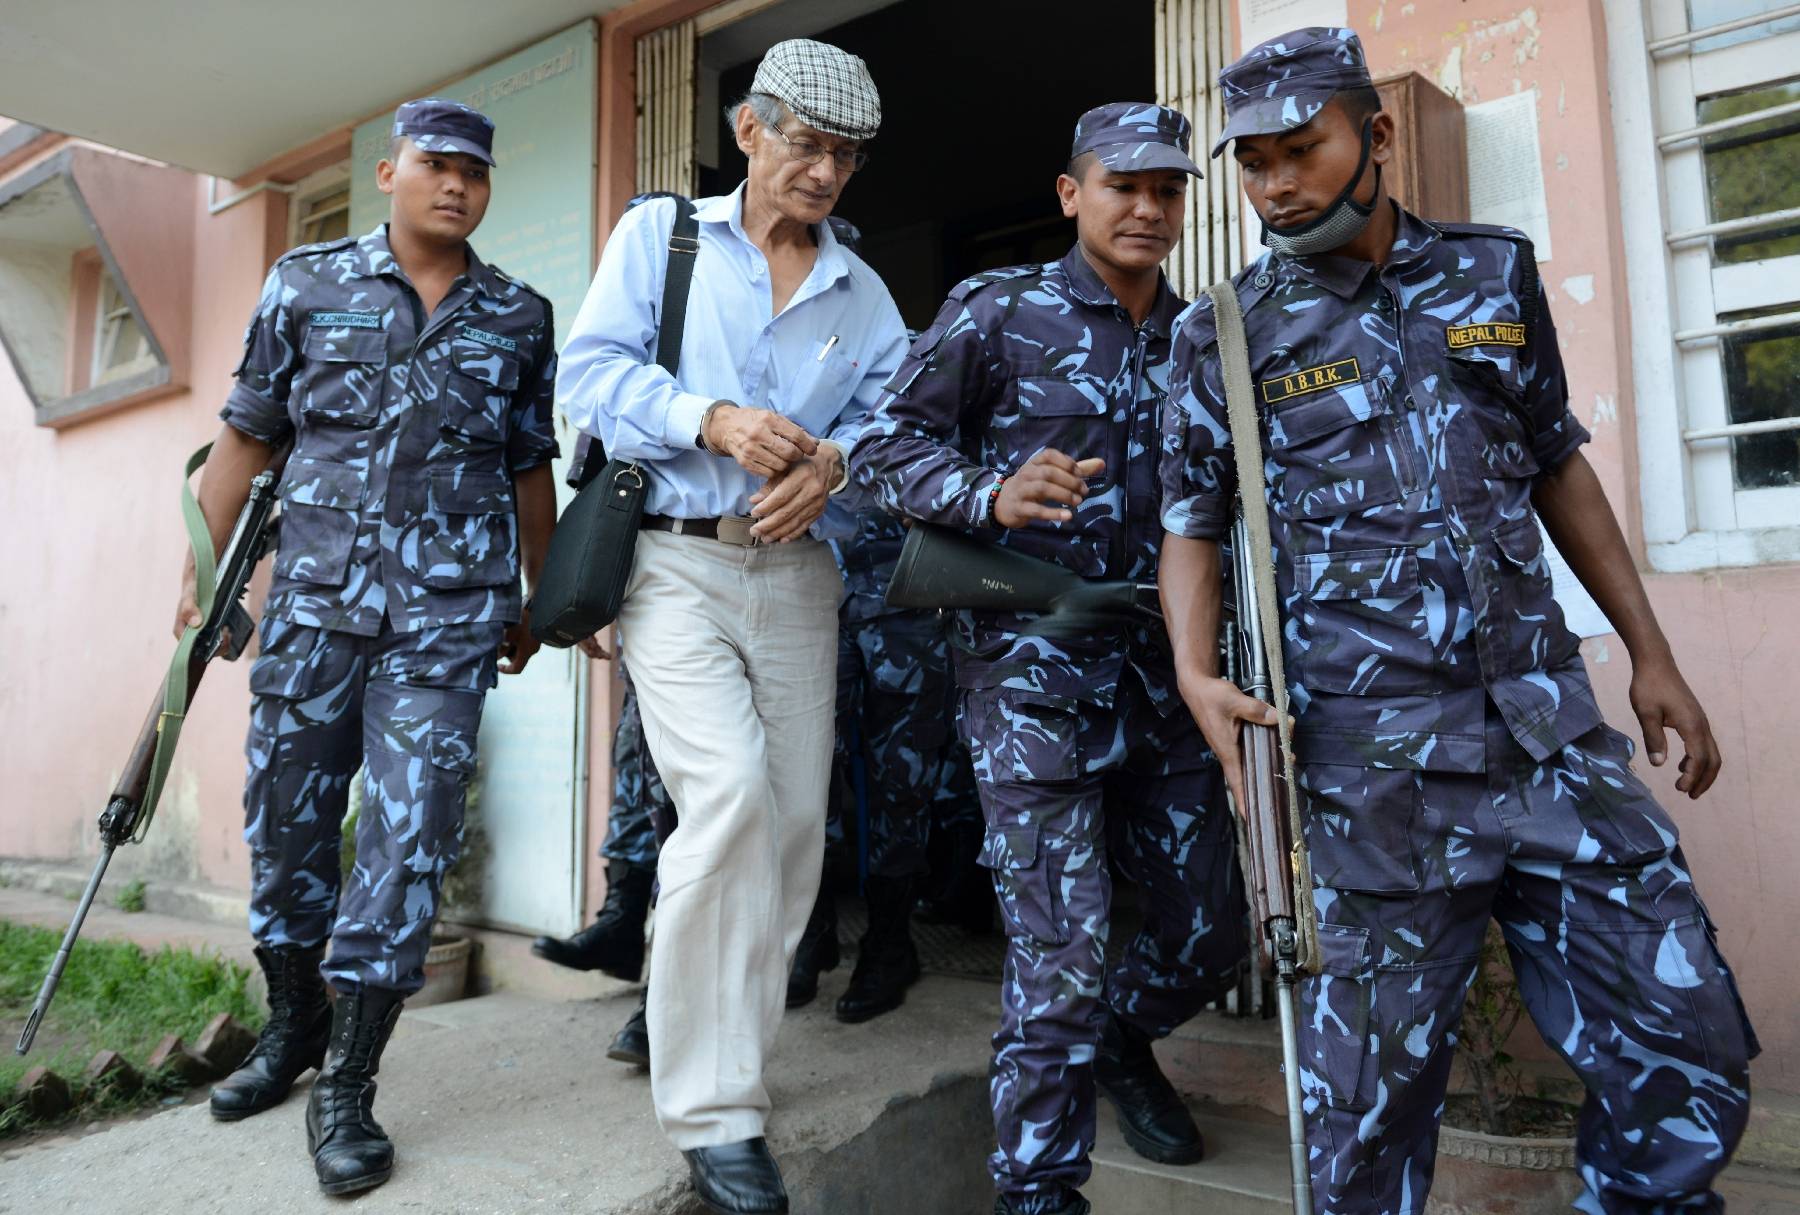 Népal: la justice ordonne la libération du tueur en série français Charles Sobhraj dit 